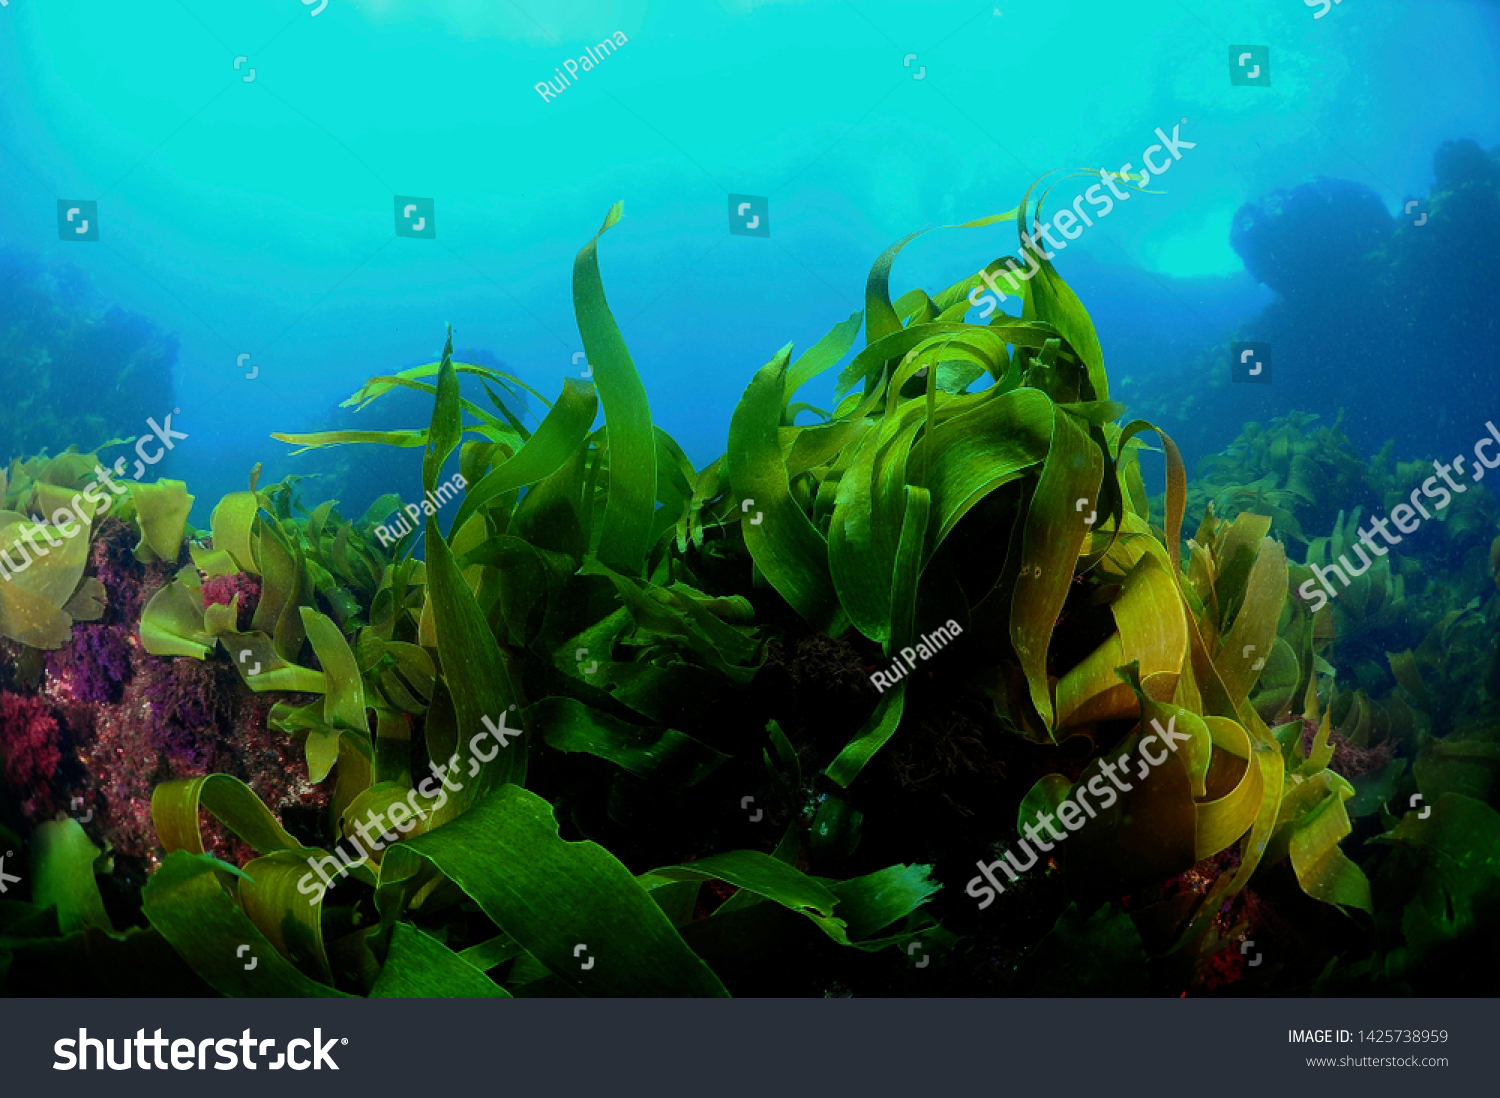 under water kelp forest photo #1425738959